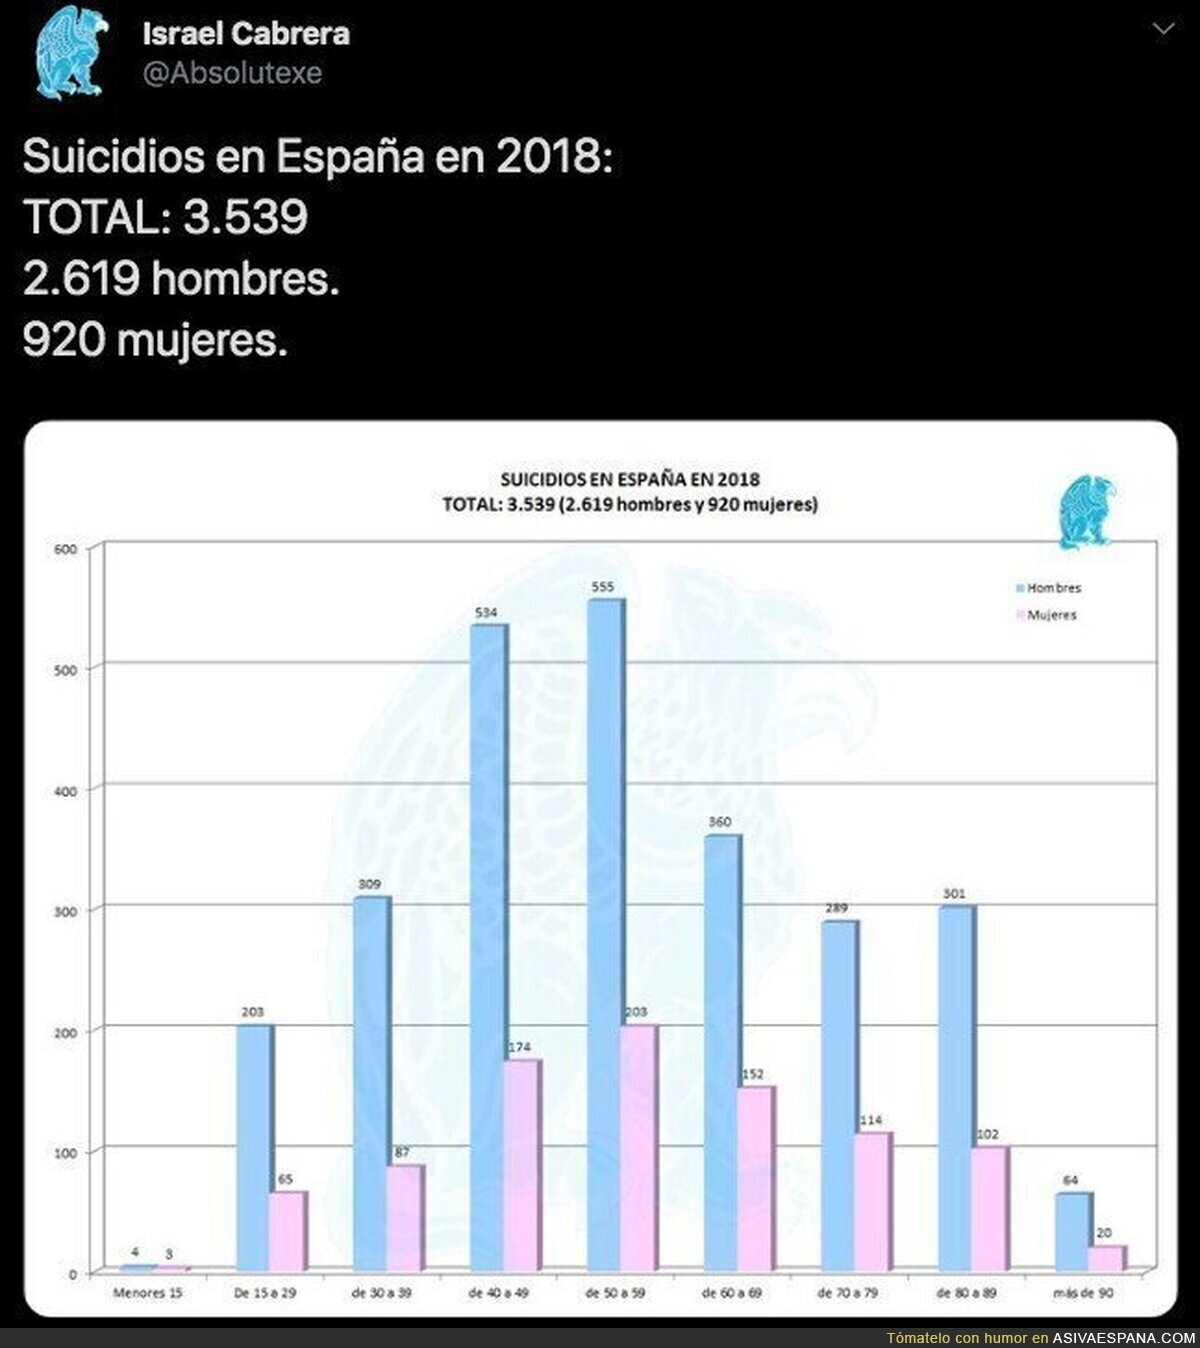 El dato totalmente silenciado en España sobre suicidios